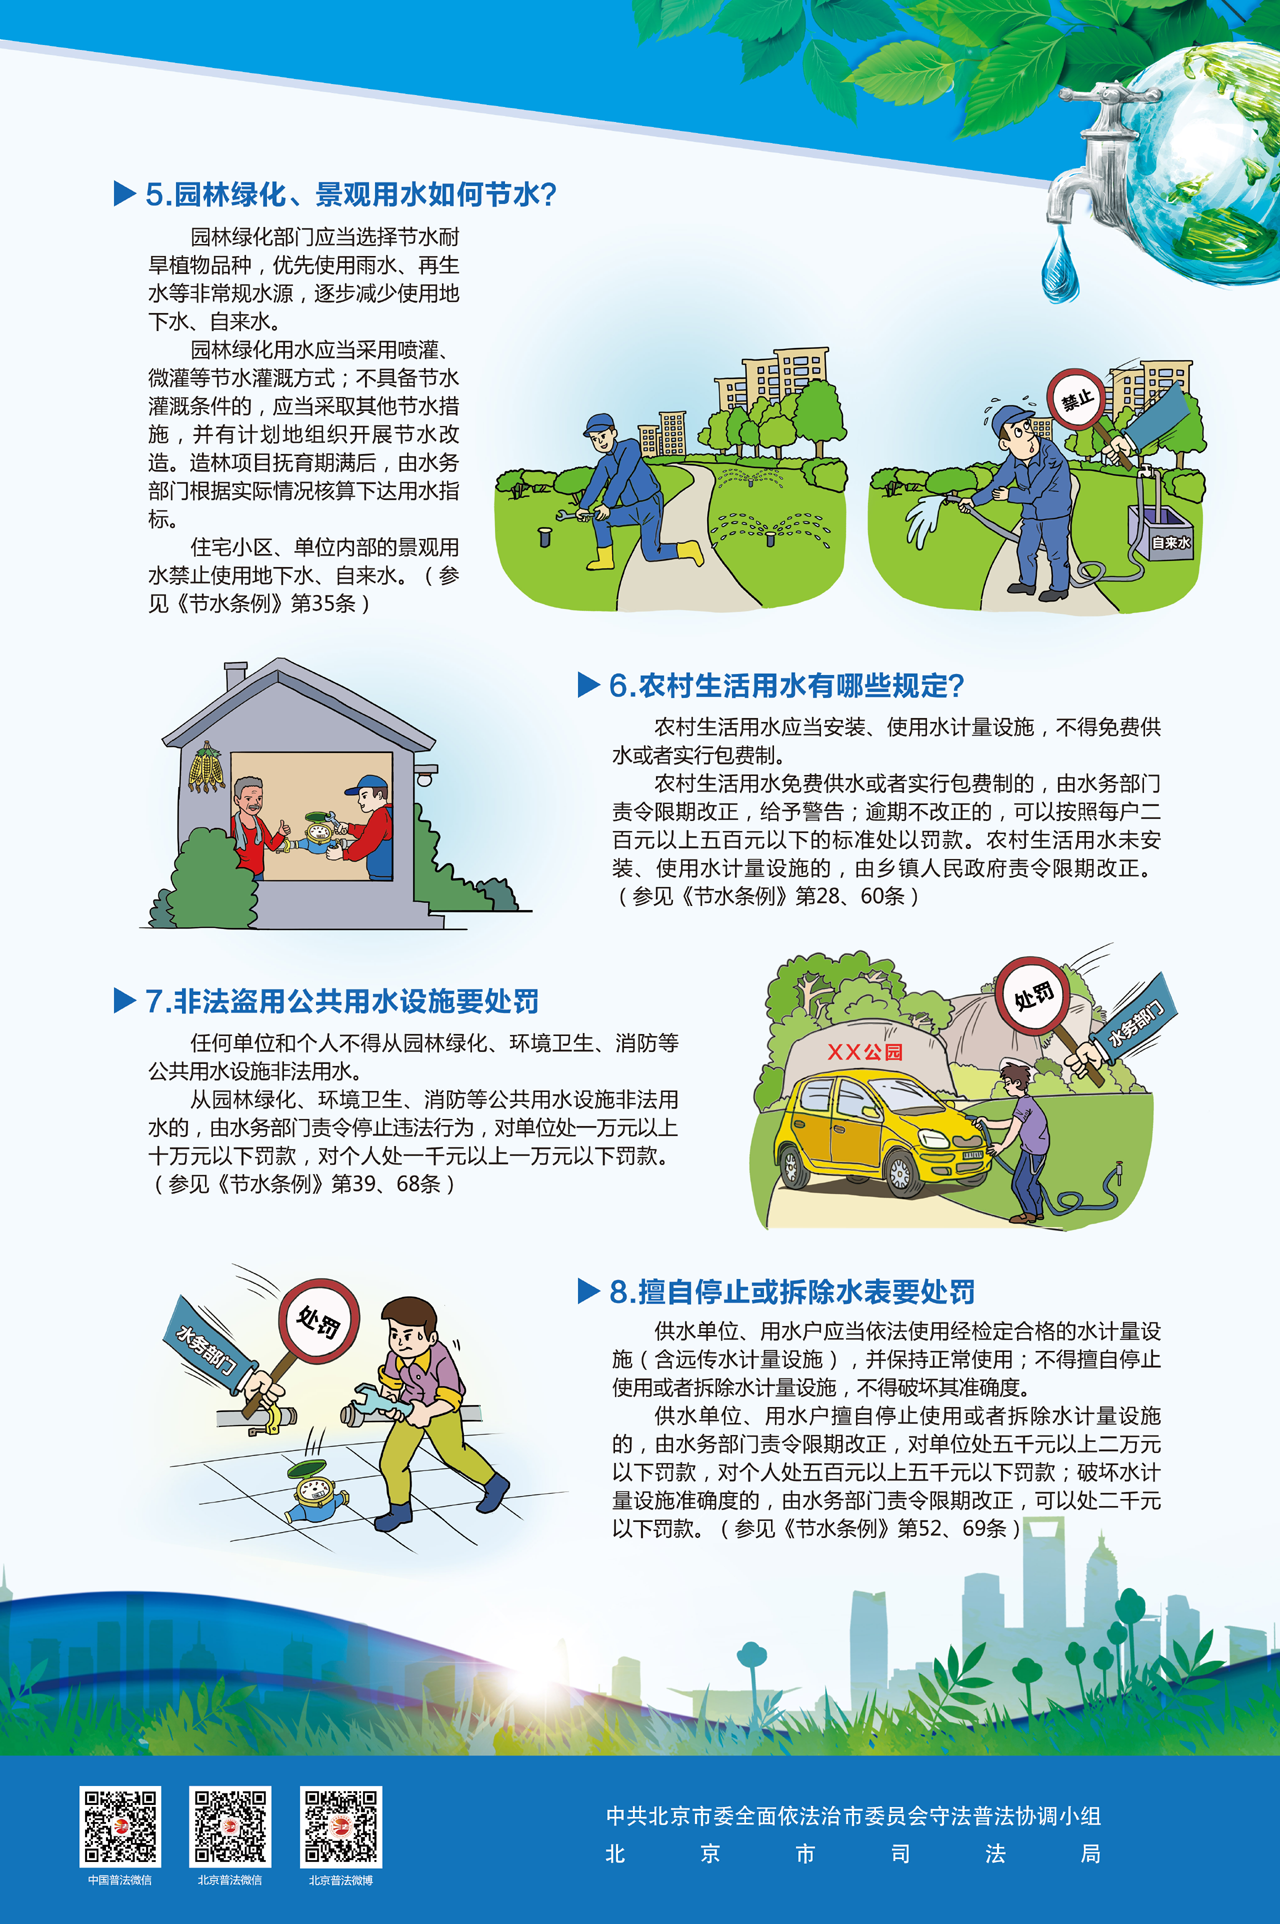 北京市普法宣传挂图第一期-2